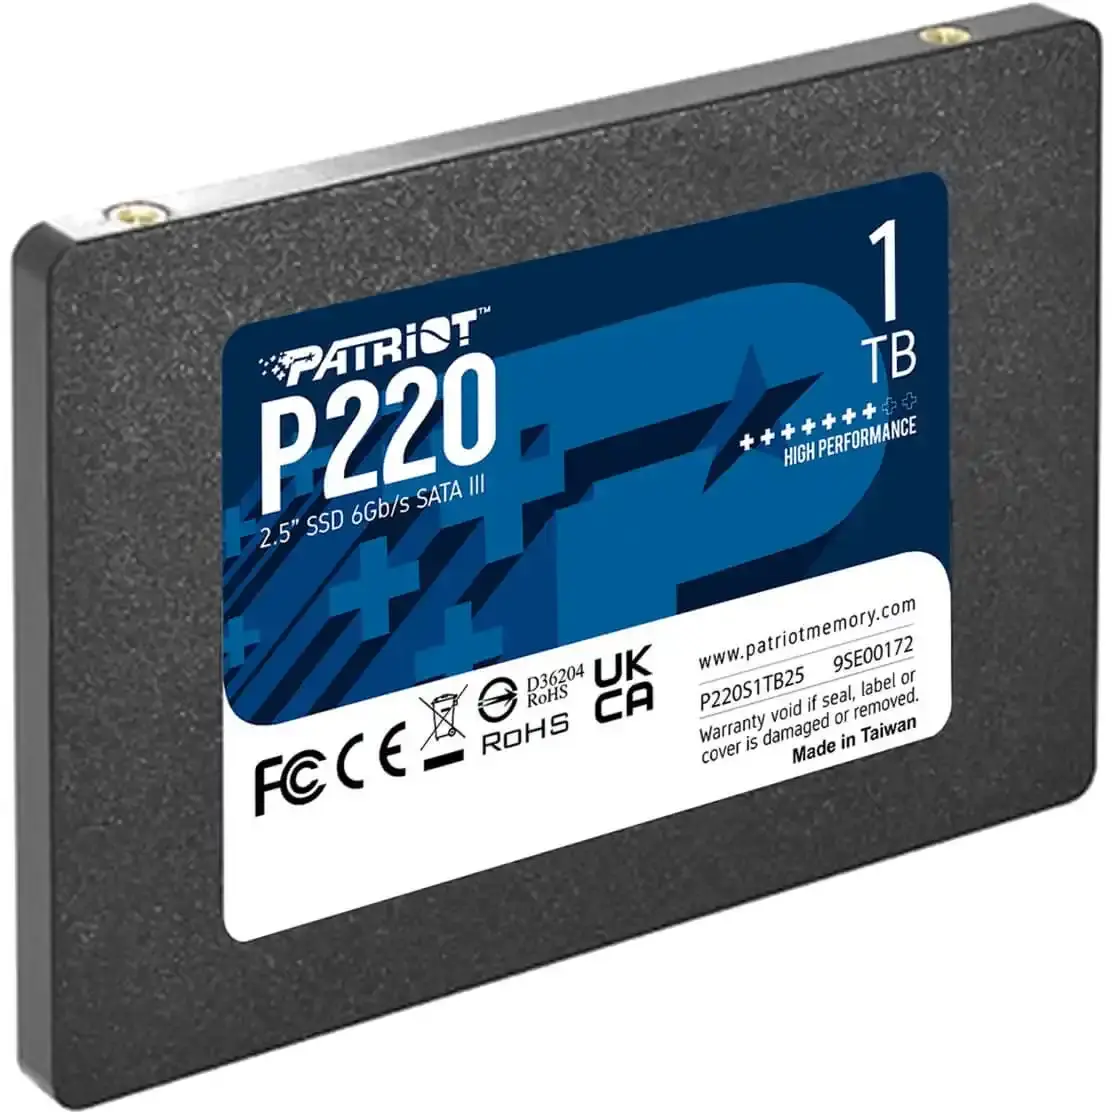 PATRIOT SSD 2.5 SATA3 1TB P220 550MBs/500MBs P220S1TB25 sivi